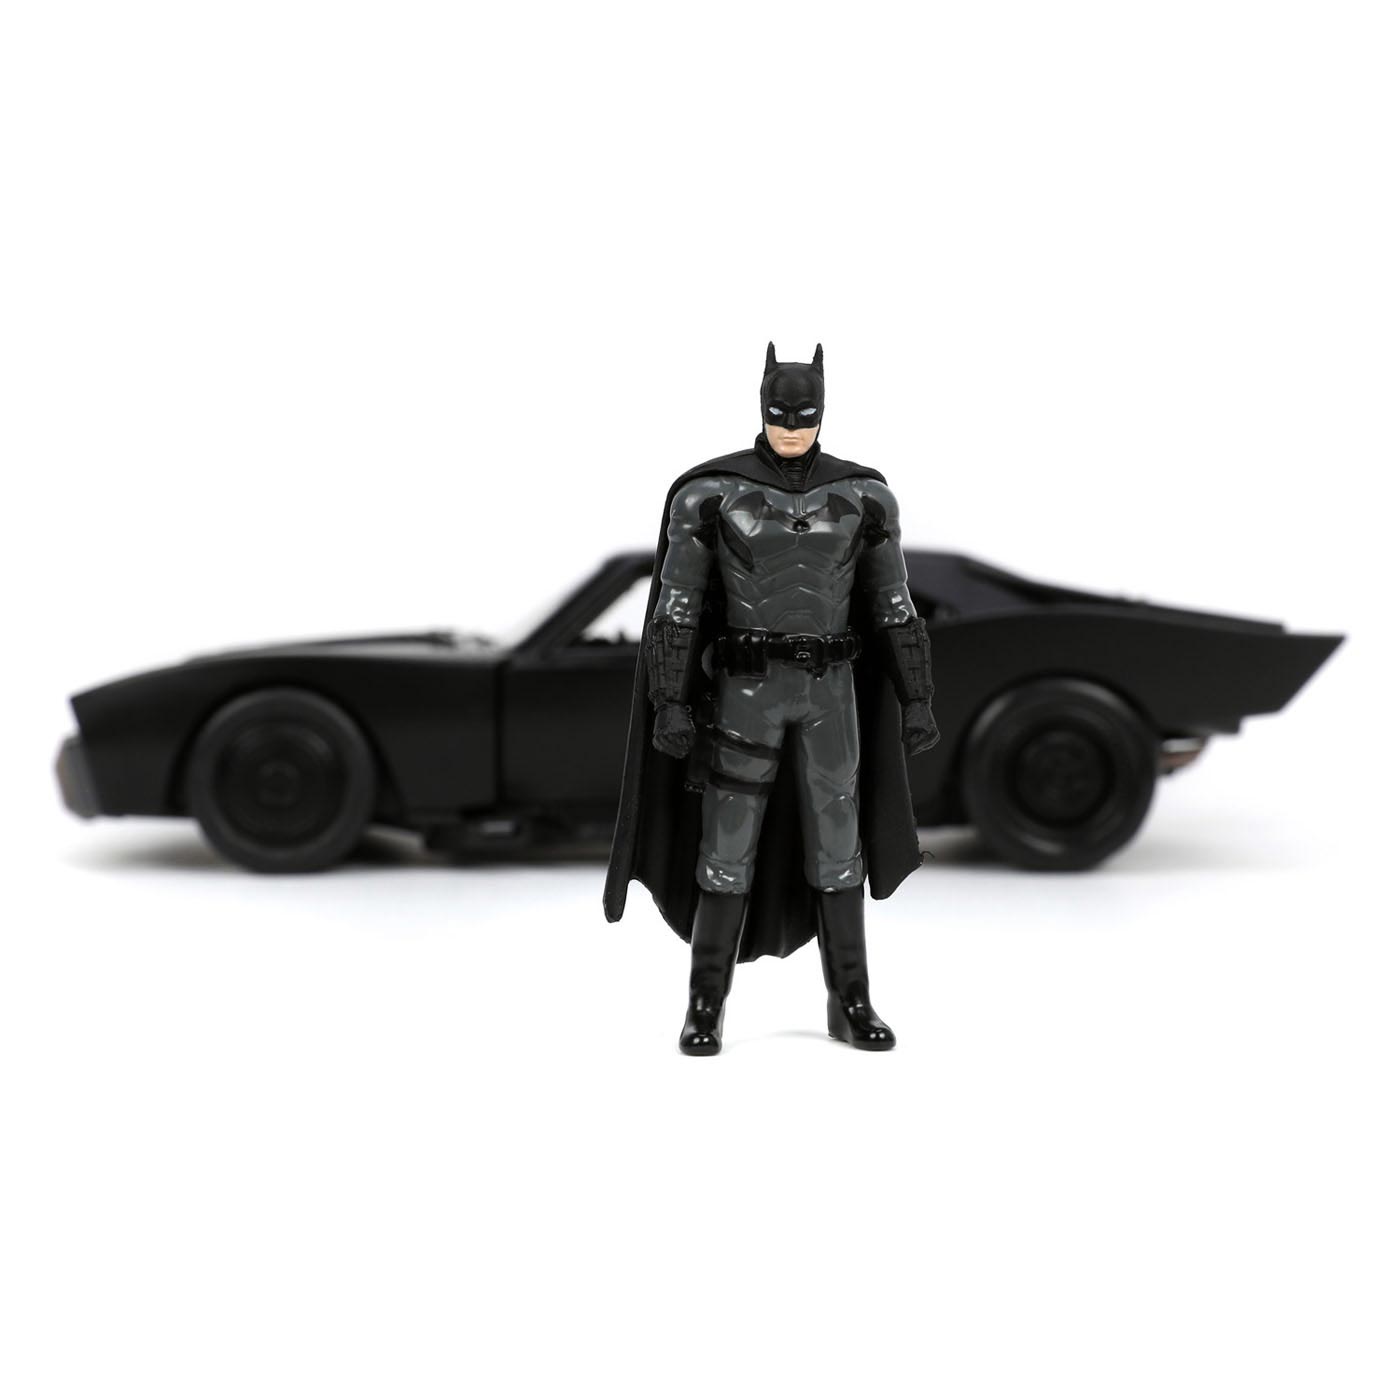 Jada Batman mit Batmobil-Auto aus Druckguss 1:24